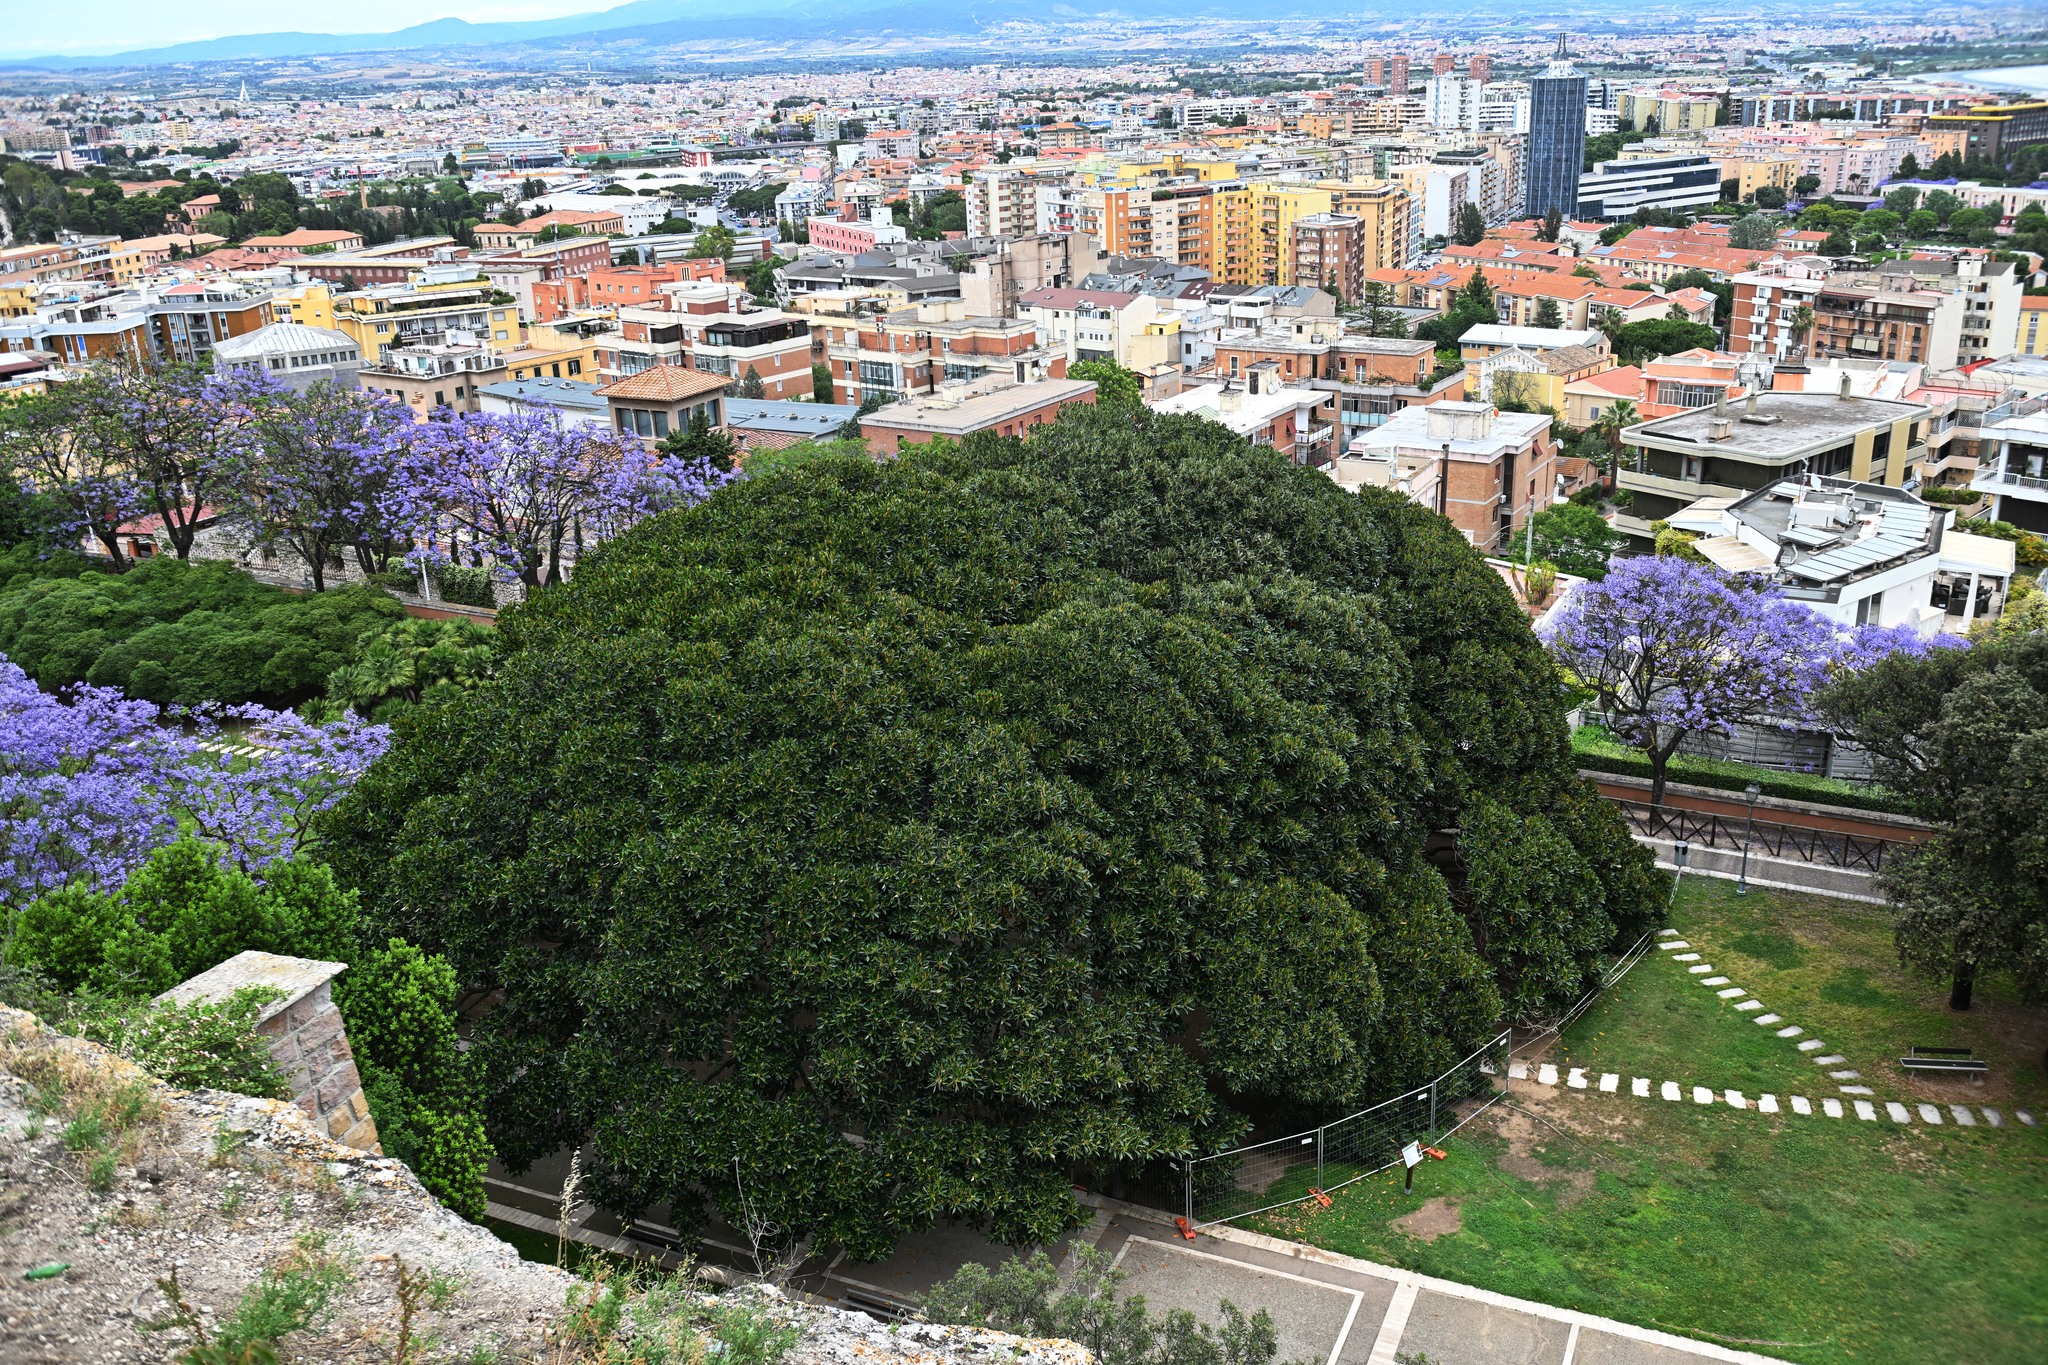 Lo straordinario ficus magnolioide dei Giardini pubblici visto dall'alto nello scatto di Dietrich Steinmetz